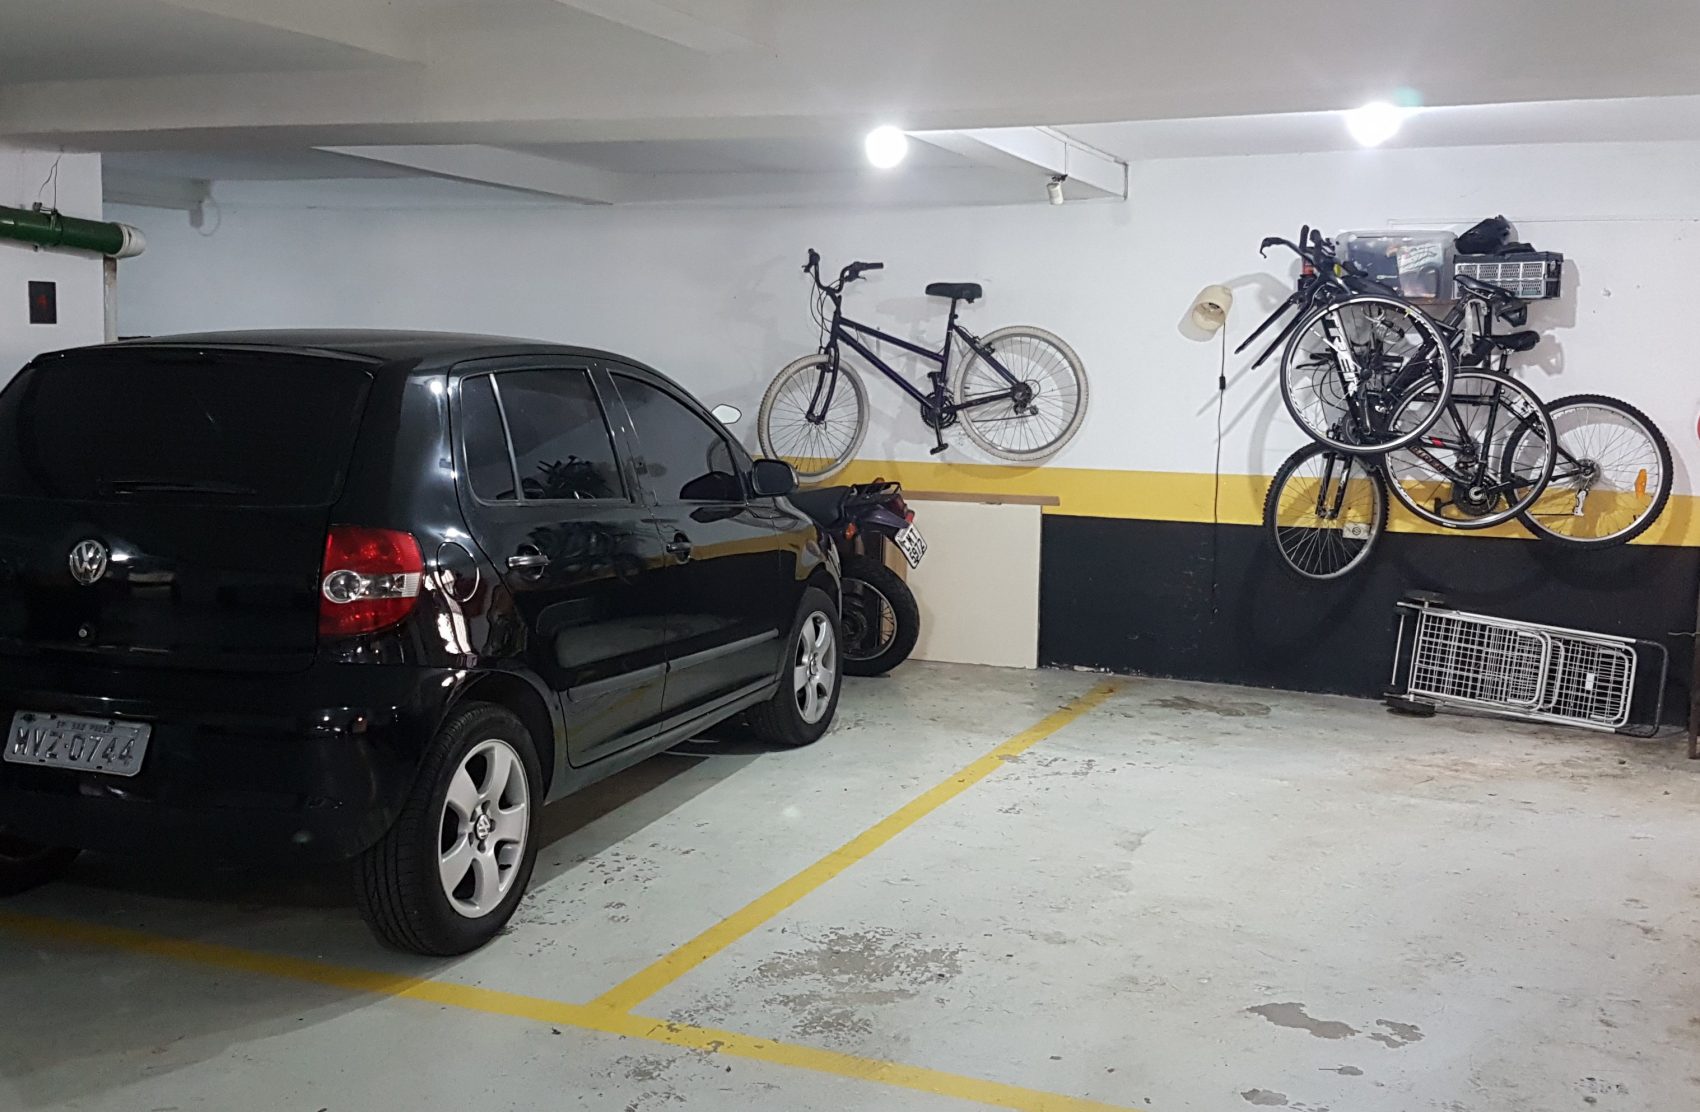 Bicicletas dividem espaço com carro em garagem da capital paulista: automóveis em tendência de queda na metrópole (Foto: Florência Costa)